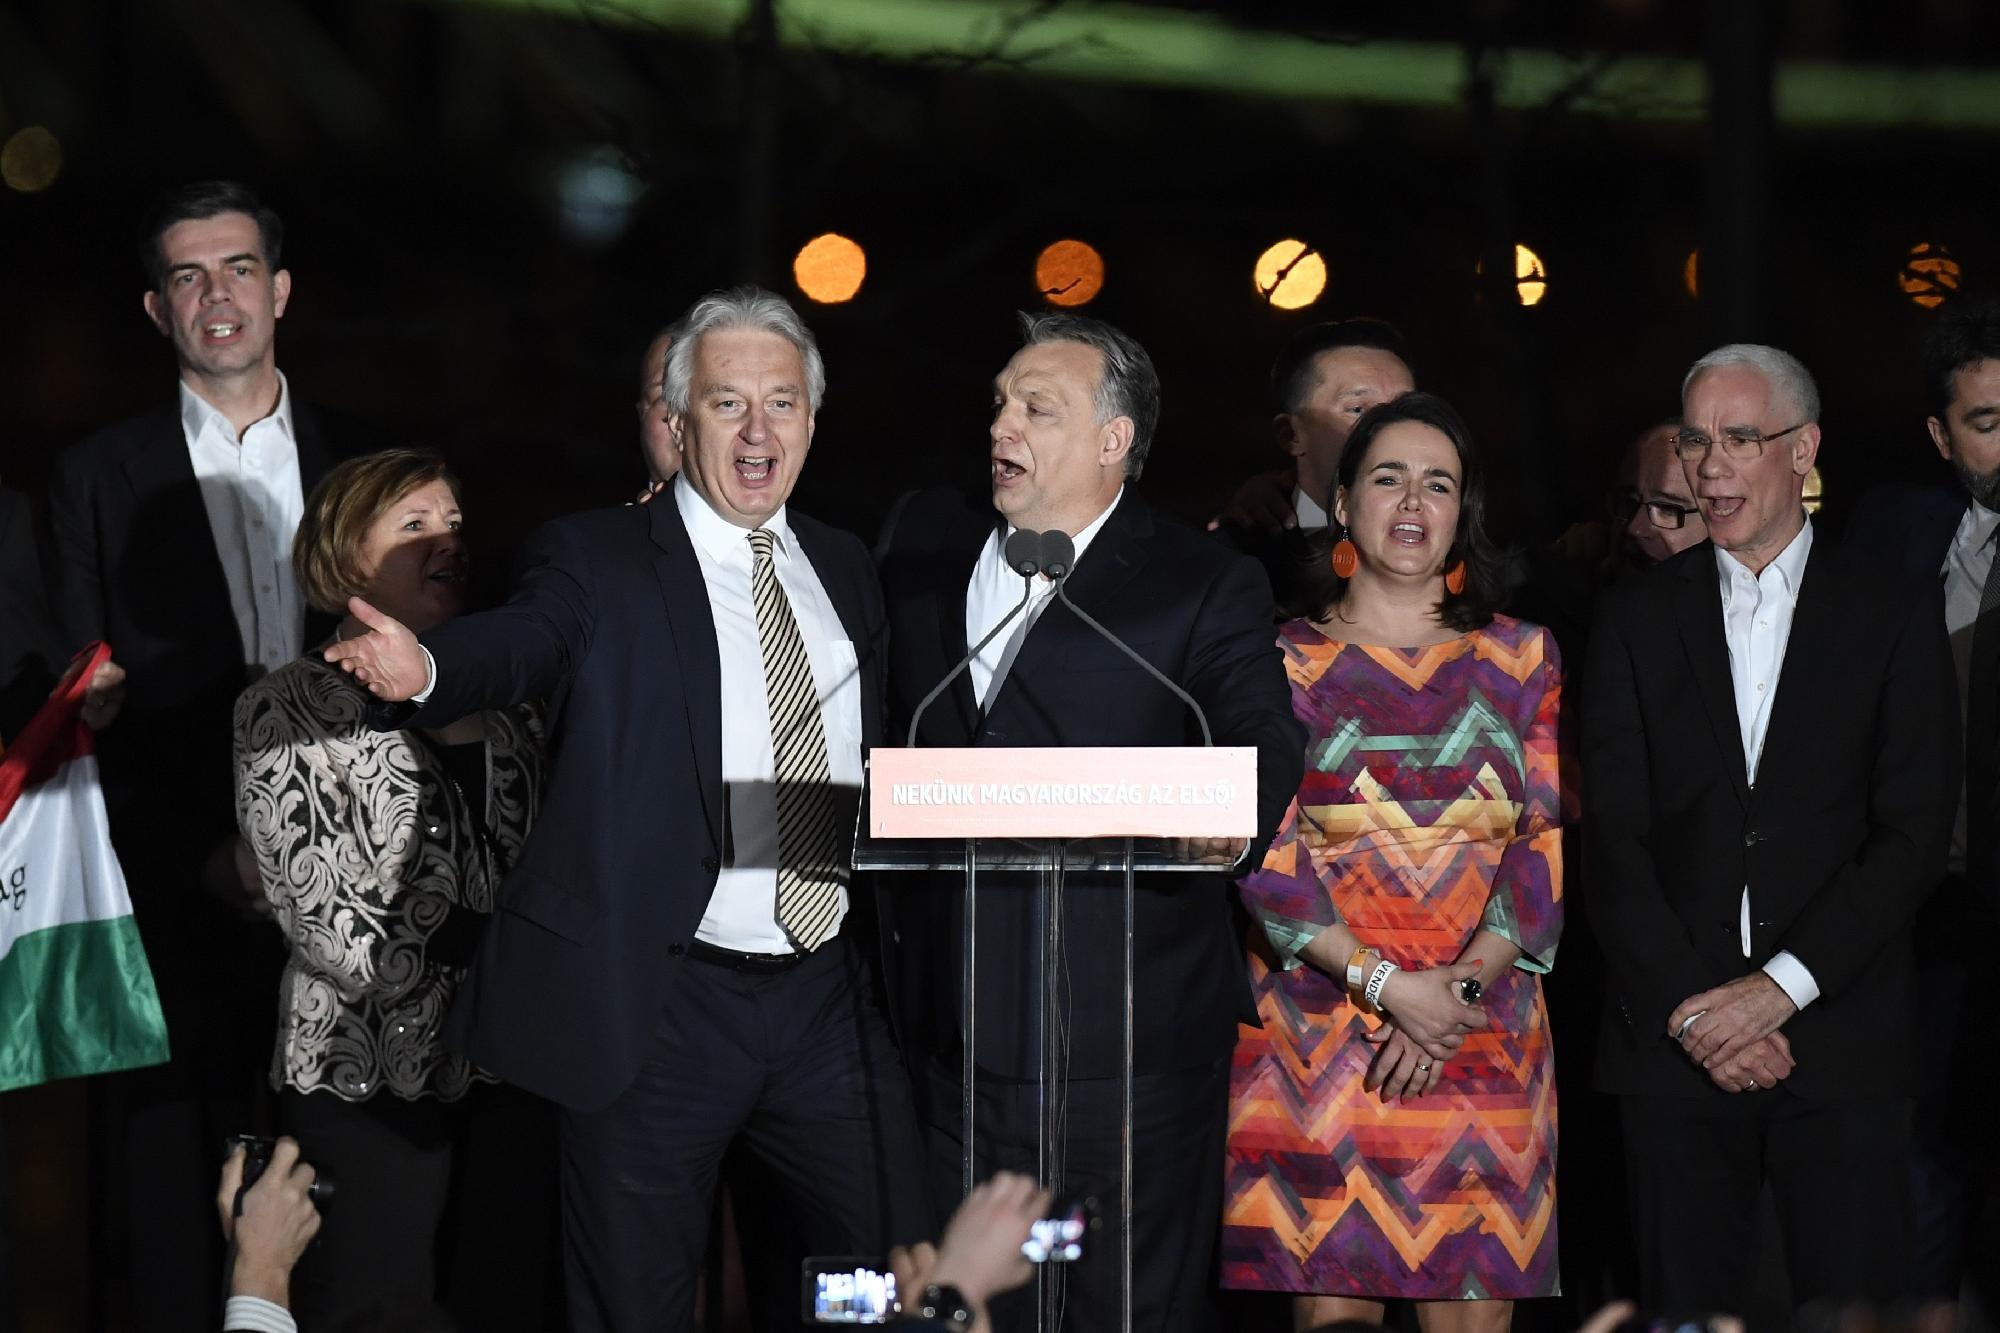 Választás 2018 - A Fidesz eredményváró rendezvénye